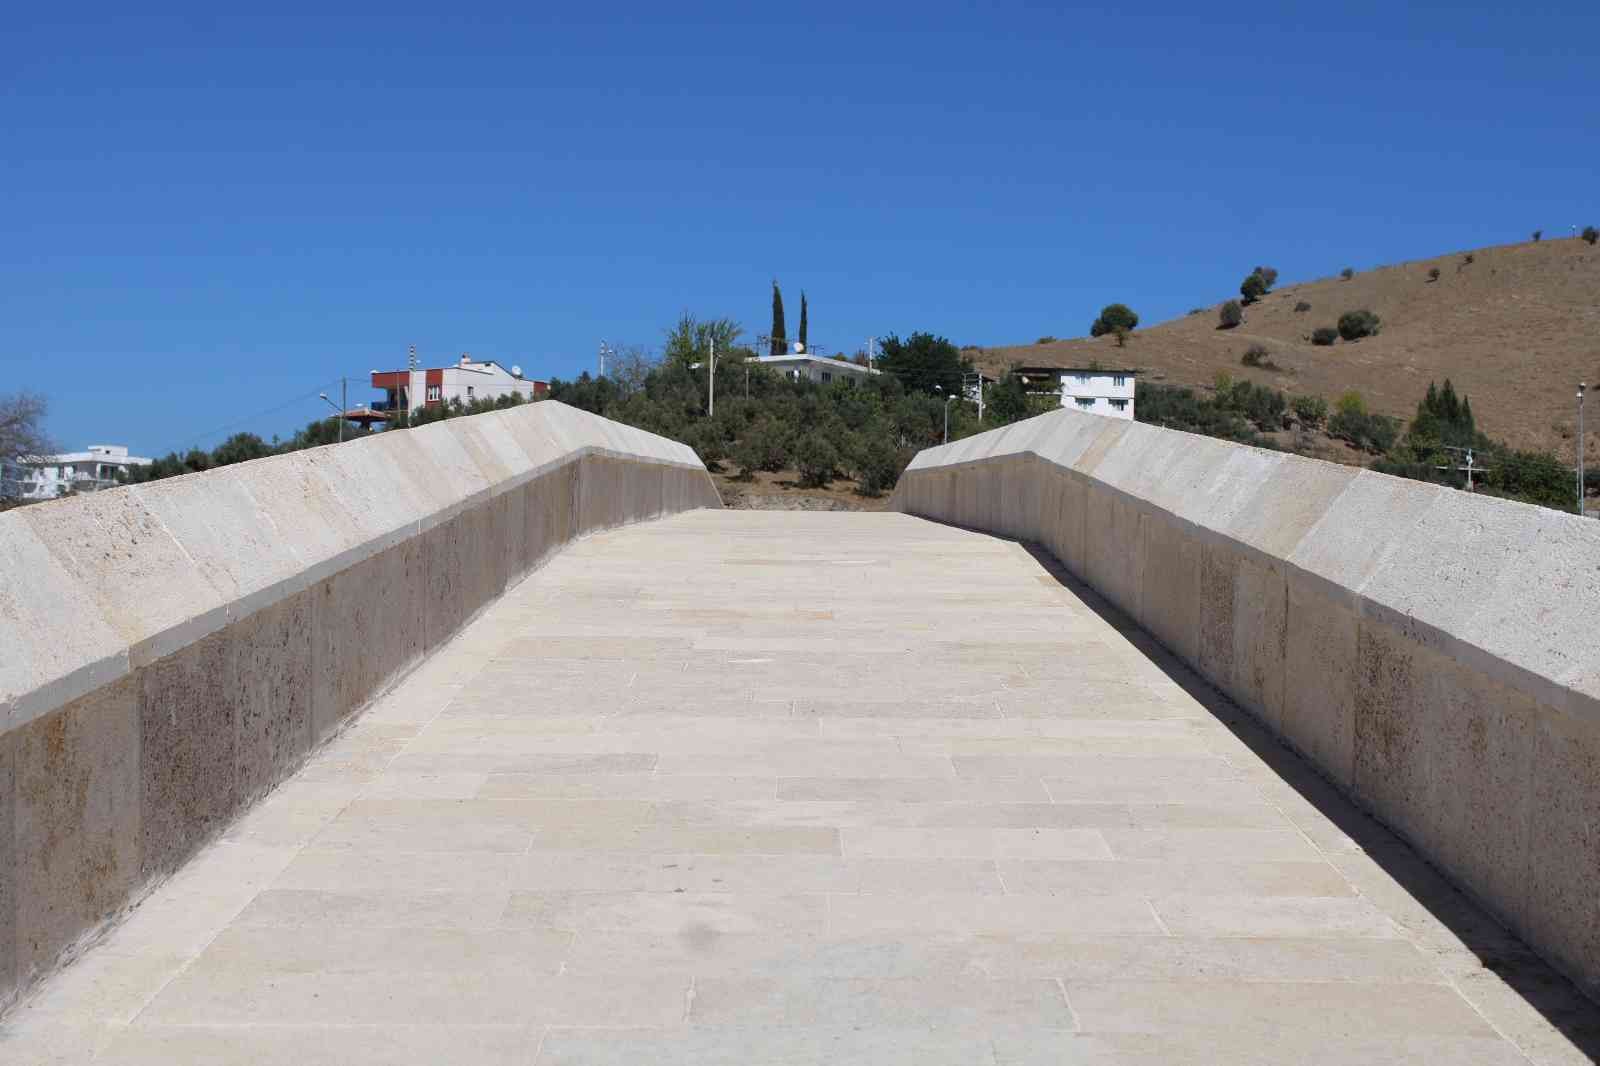 Merhum Başbakan Menderes’in yaptırdığı 67 yıllık köprü hikayesiyle dikkat çekiyor